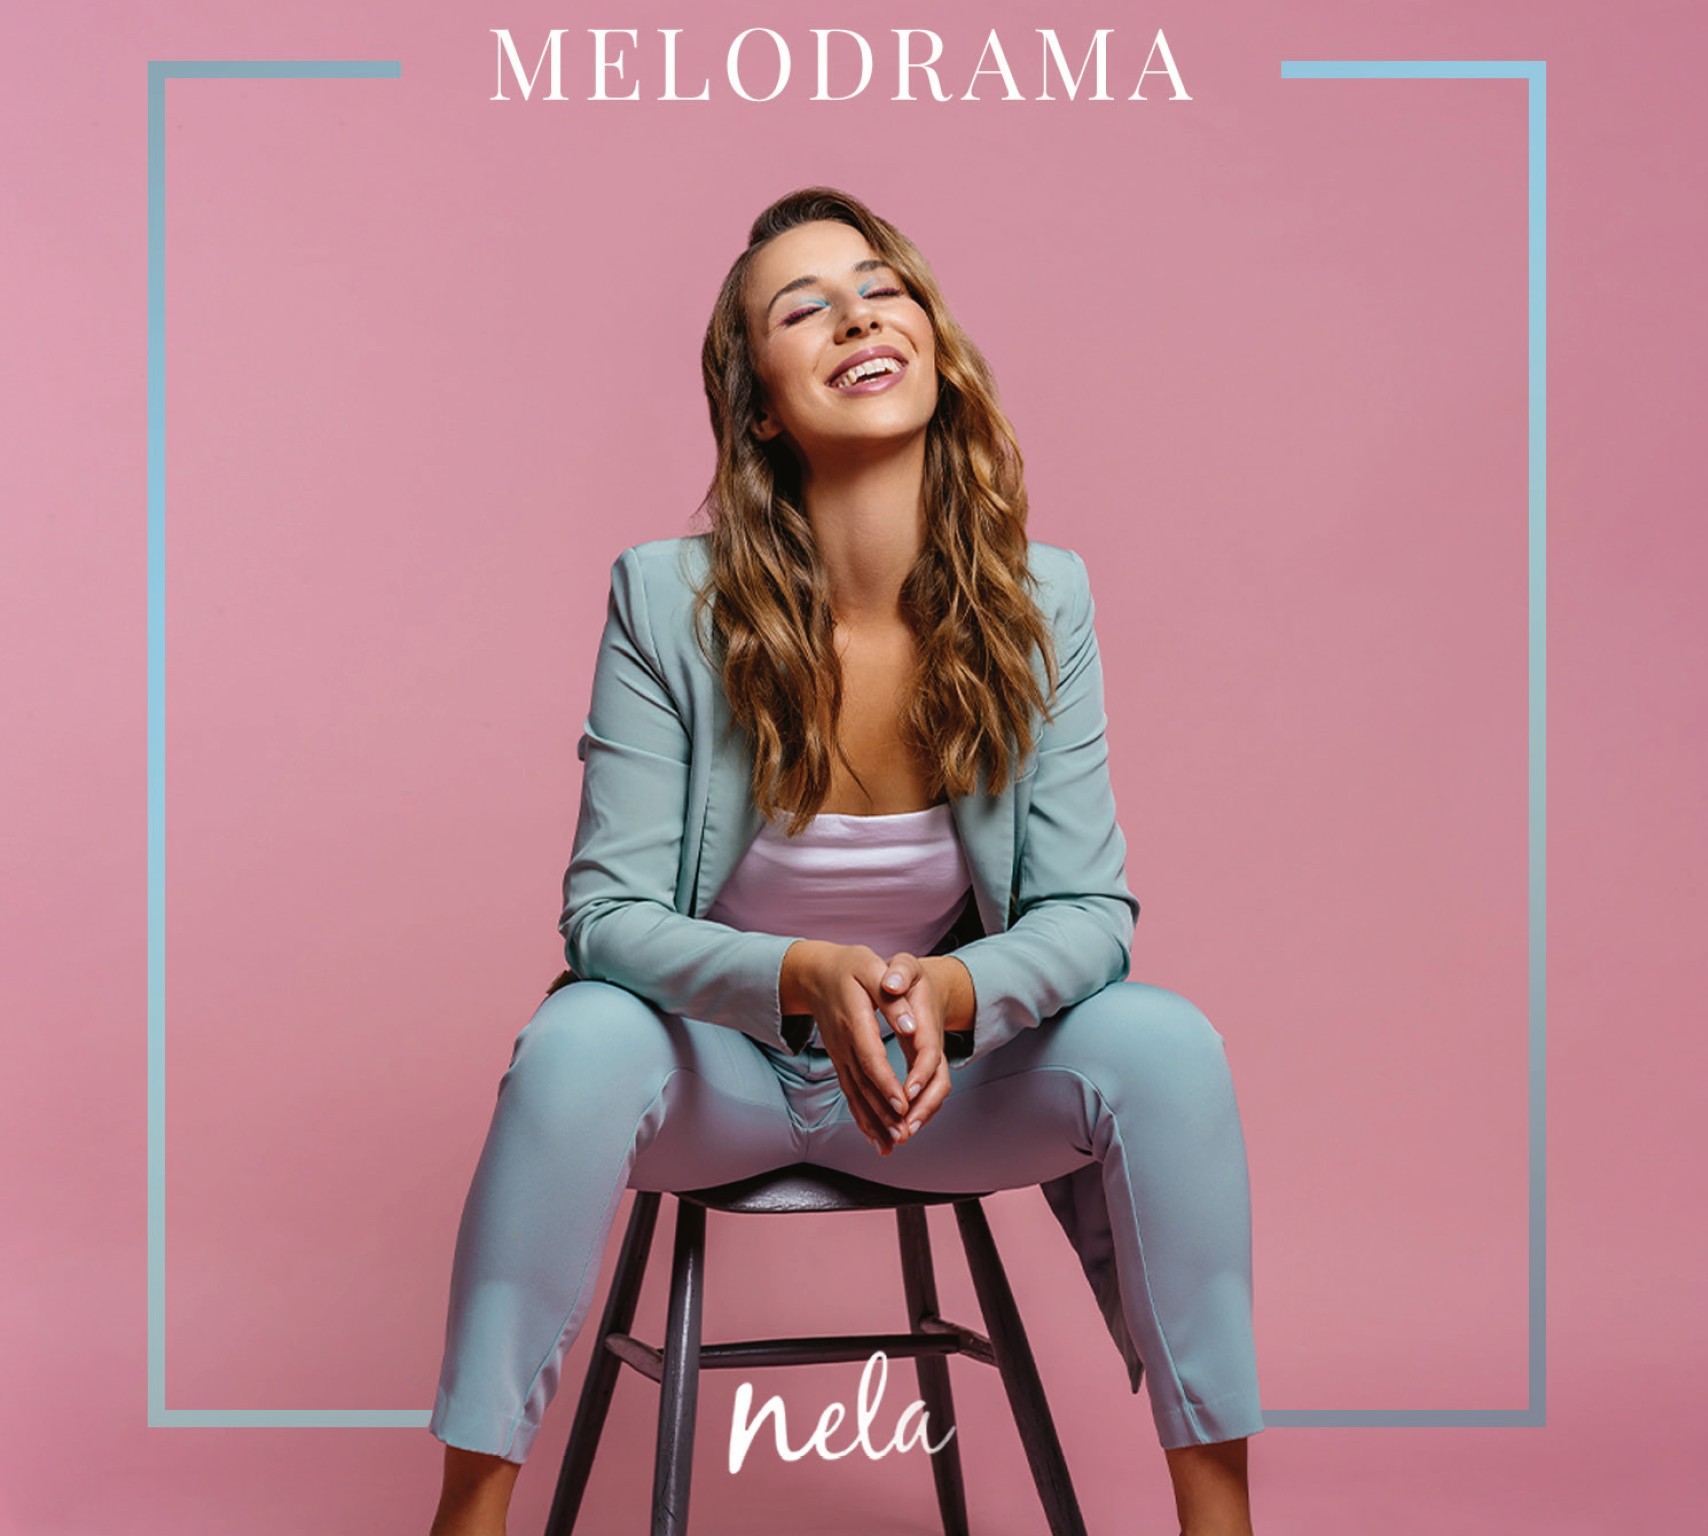 Objavljena “Melodrama”, prvi album iznimno talentirane glazbenice Nele